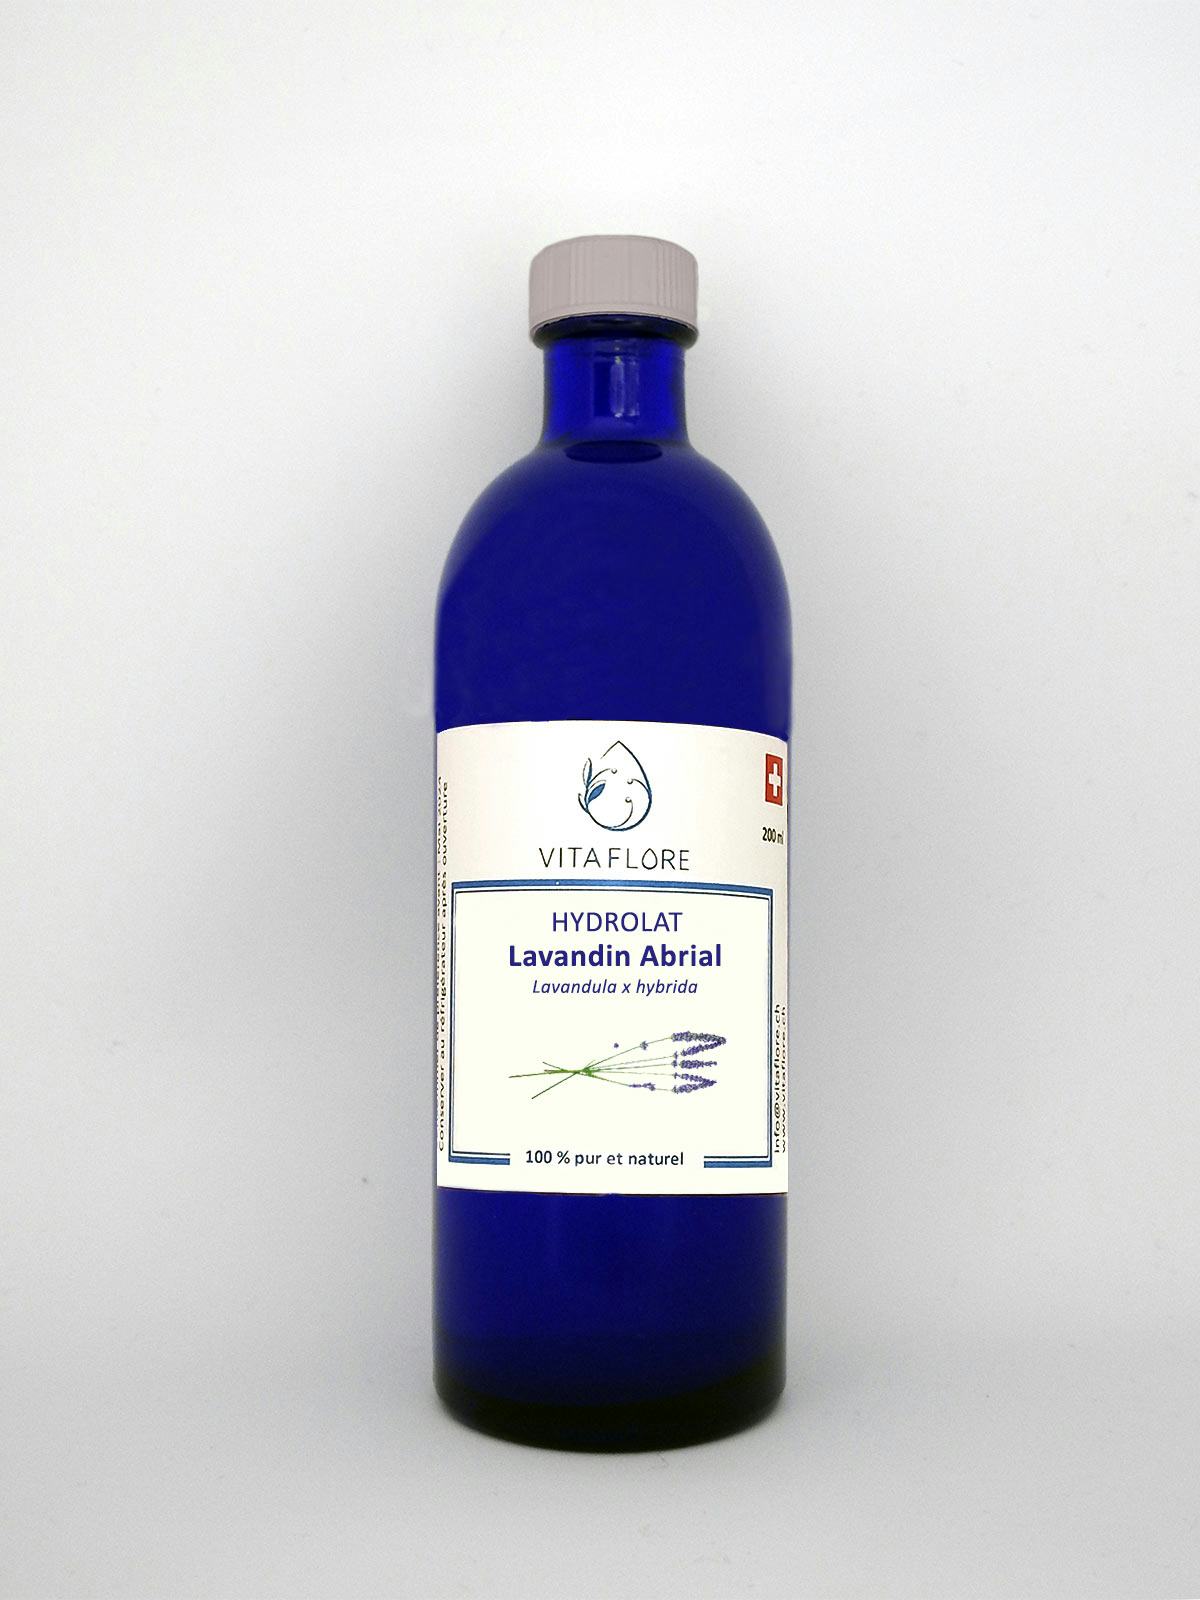 Hydrosol Lavandin Abrial, handwerkliches Produkt für den Direktverkauf in der Schweiz